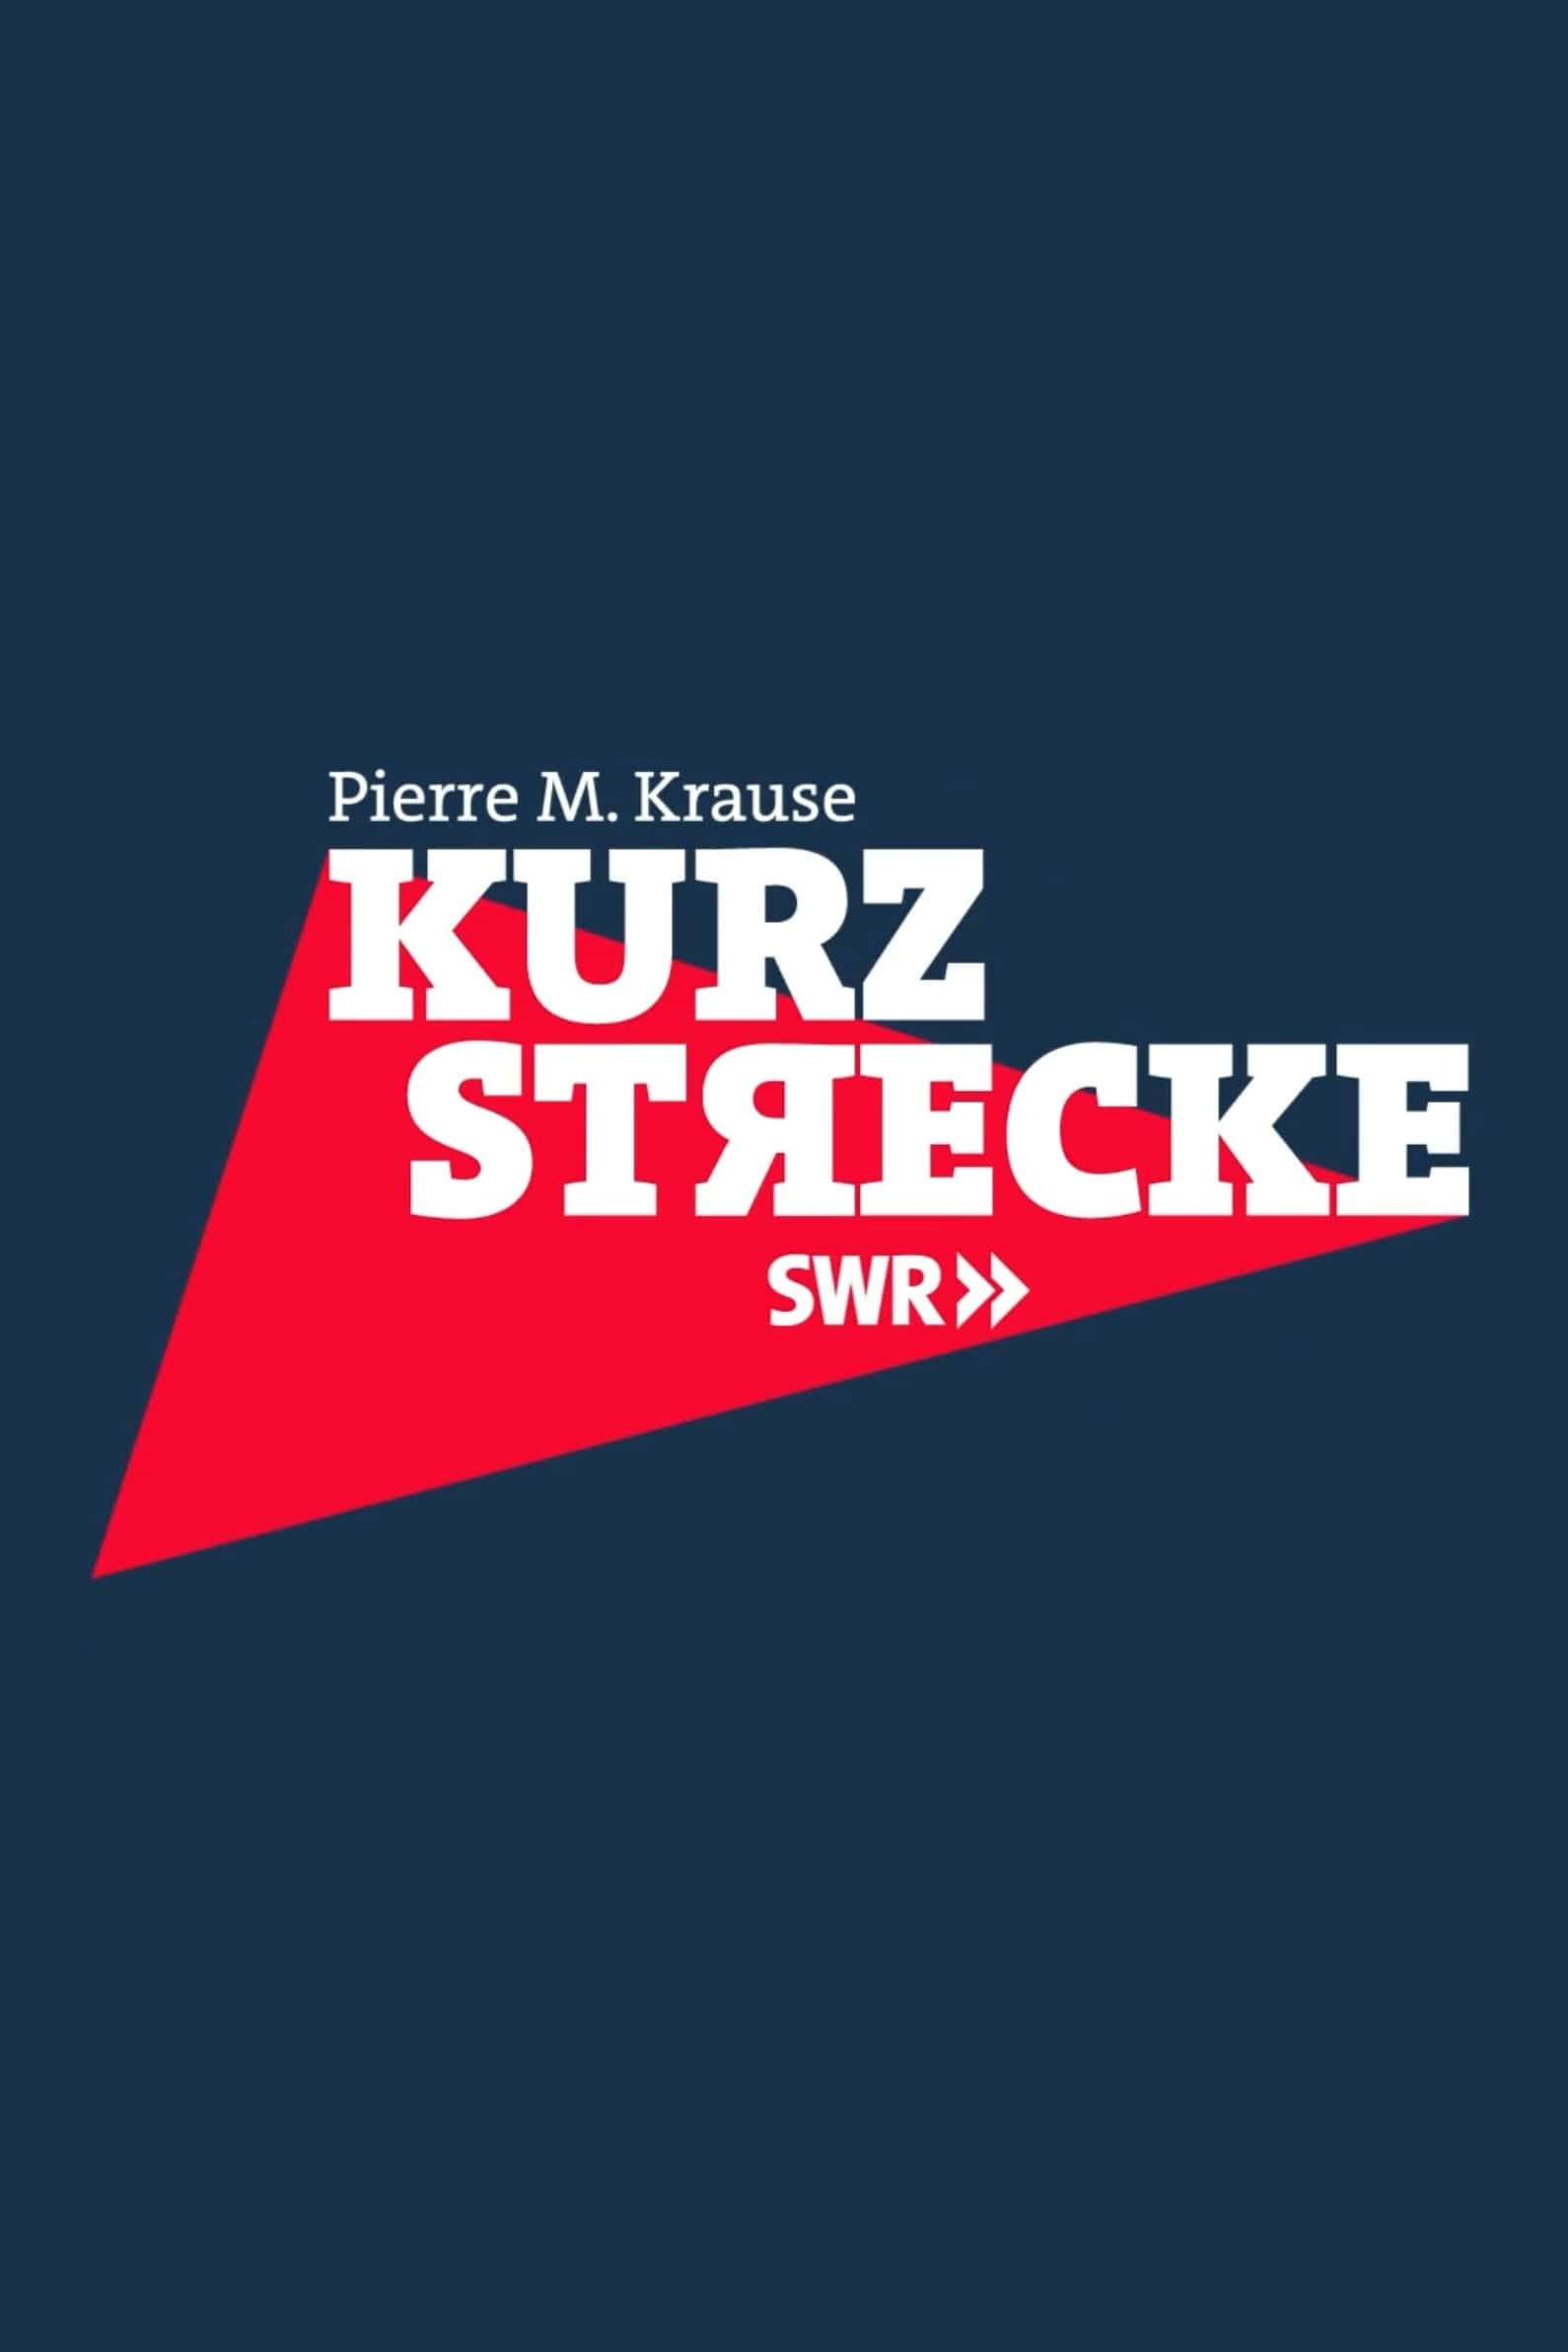 Kurzstrecke mit Pierre M. Krause (2020)